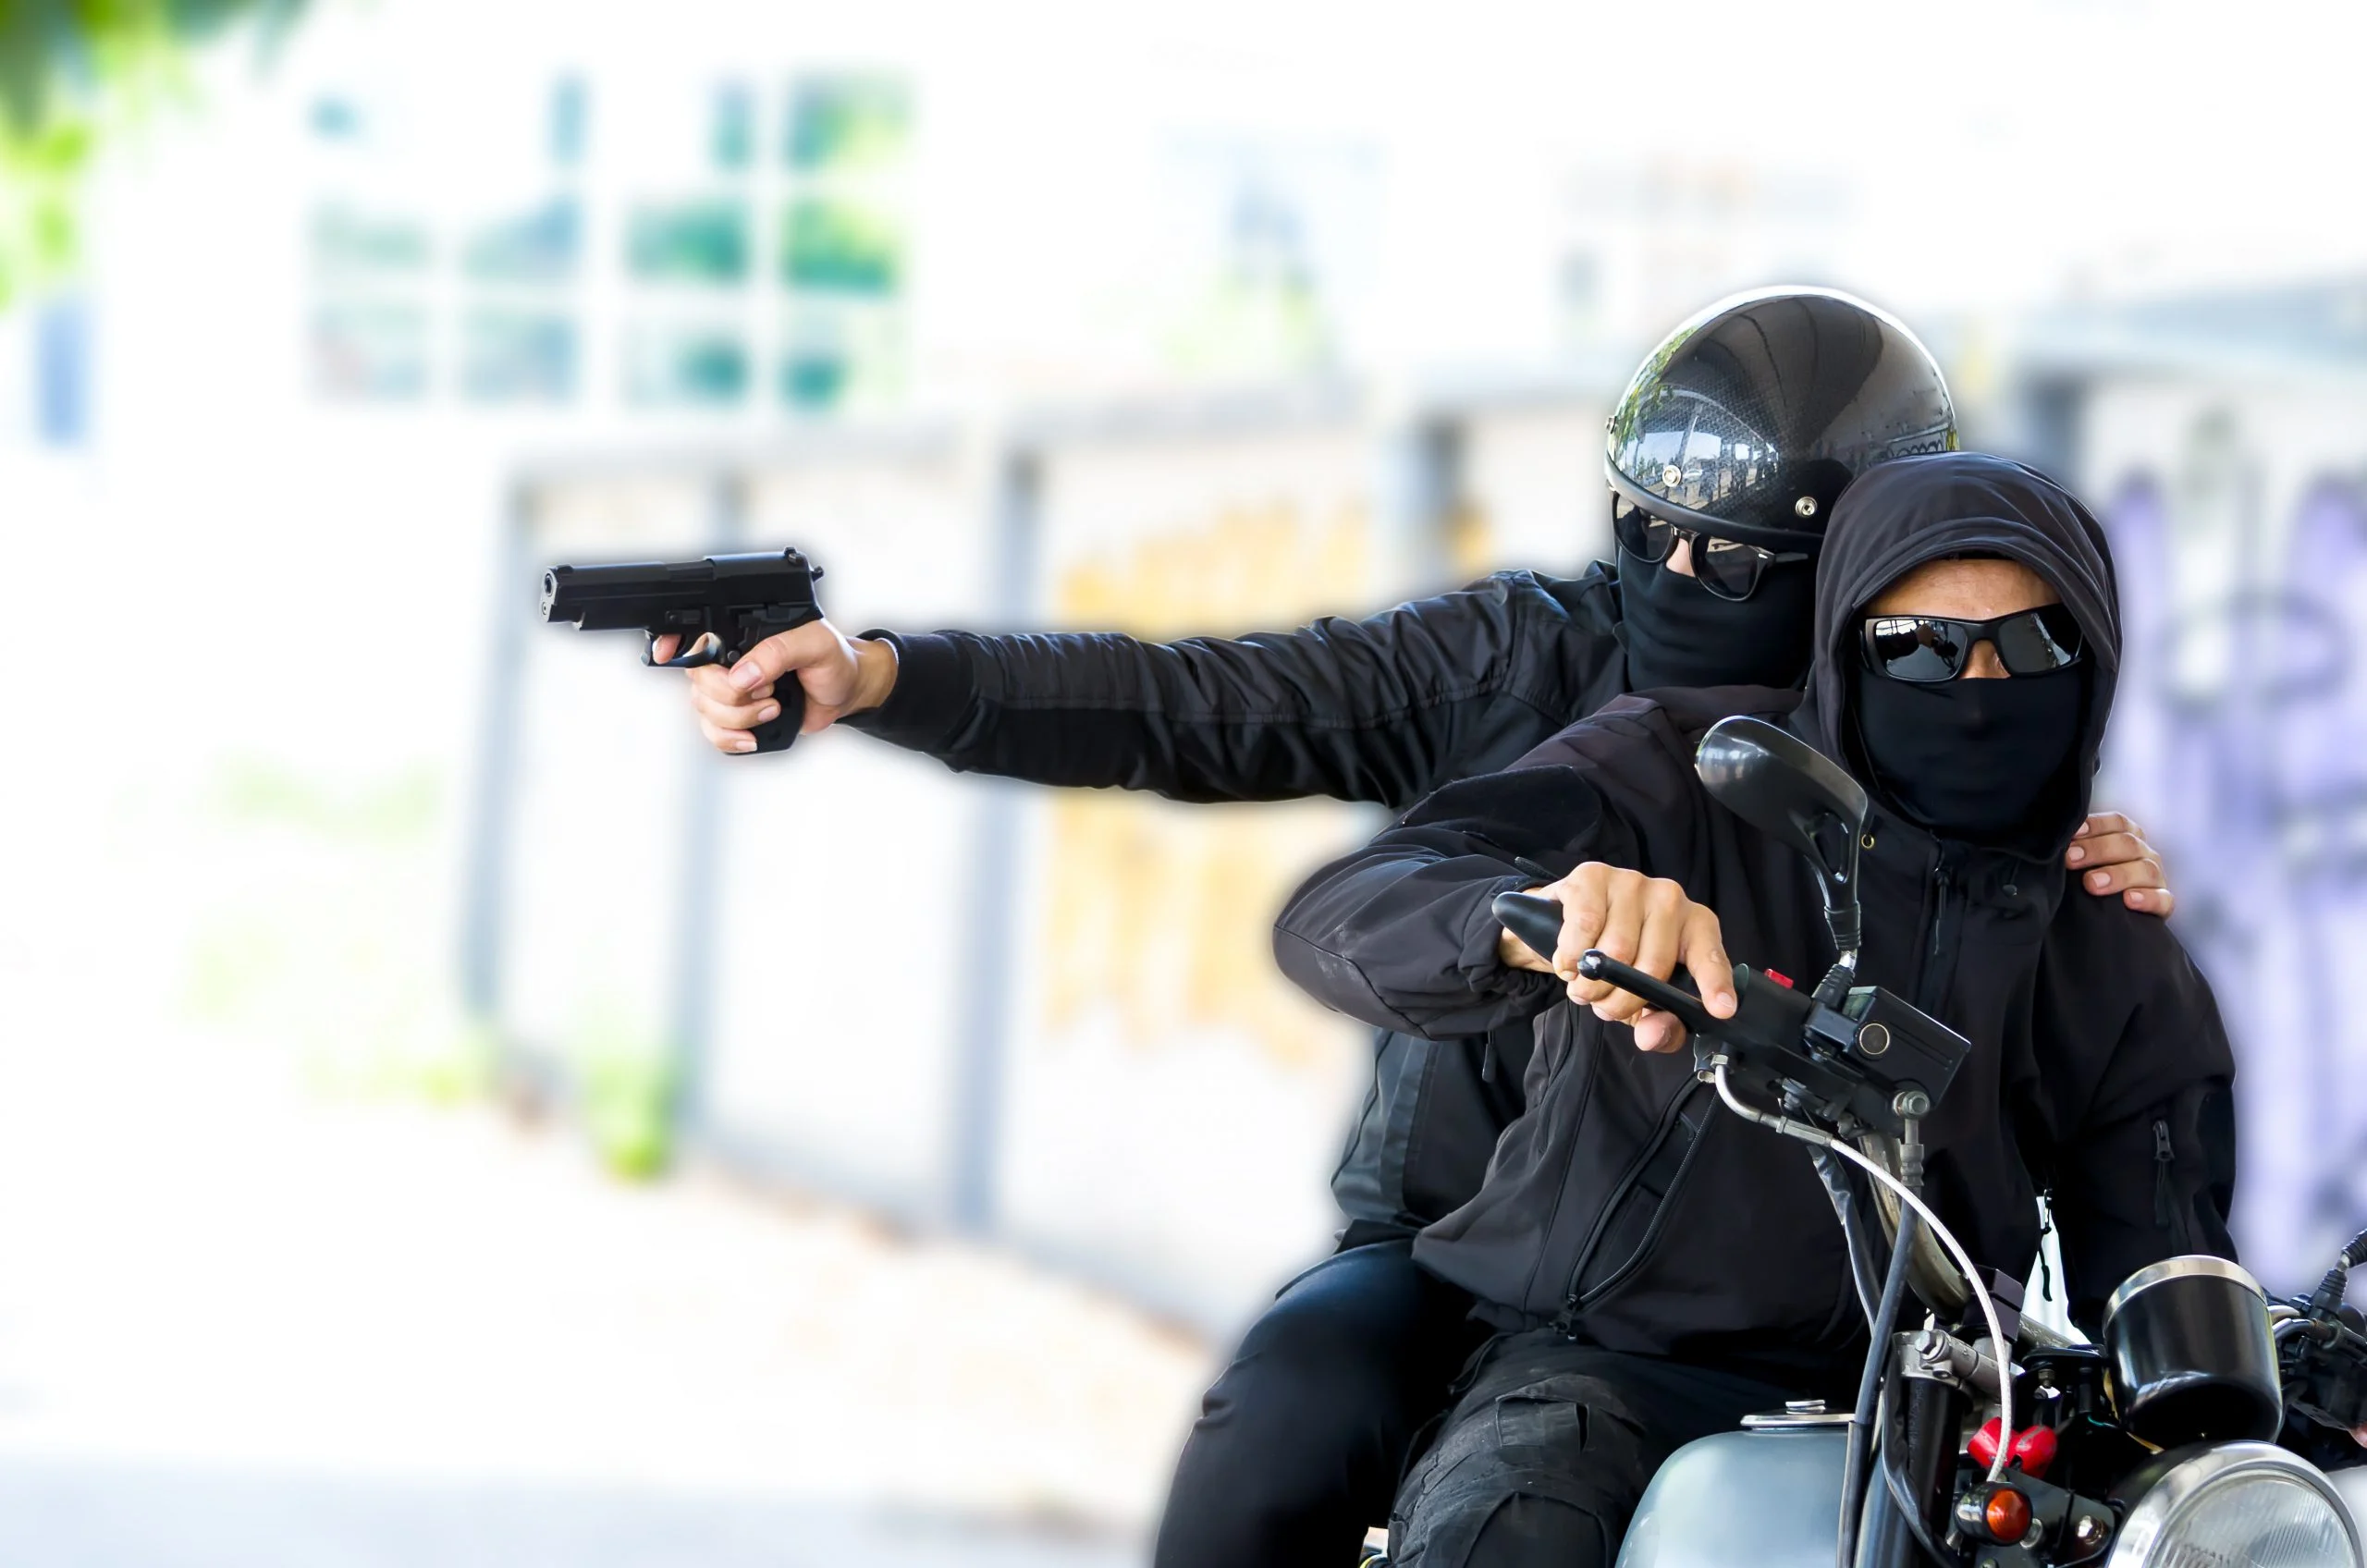 Sua moto roubada pode estar entre as 300 resgatadas pela polícia do Rio de Janeiro. Leia isso!